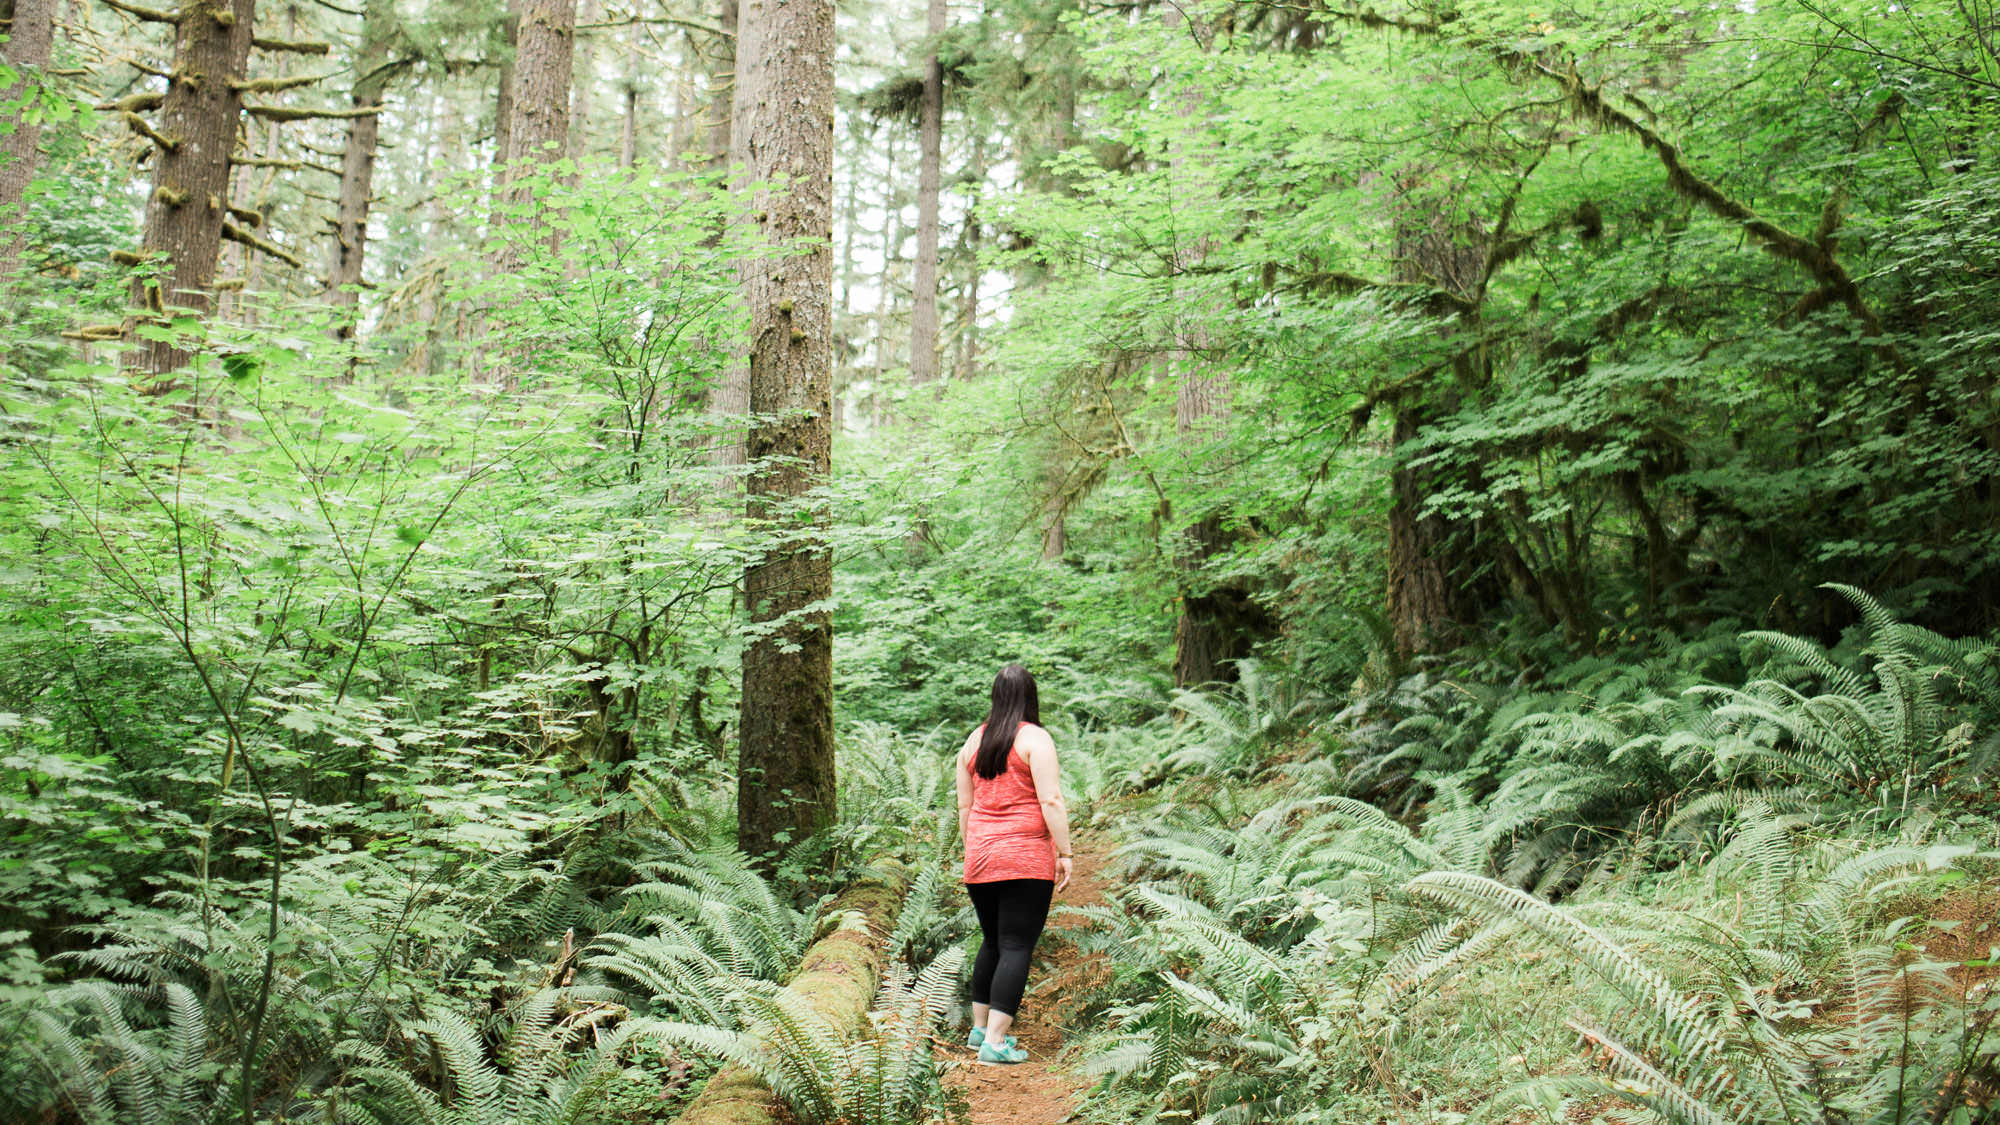 A girl walks down a trail through green ferns and tall trees.